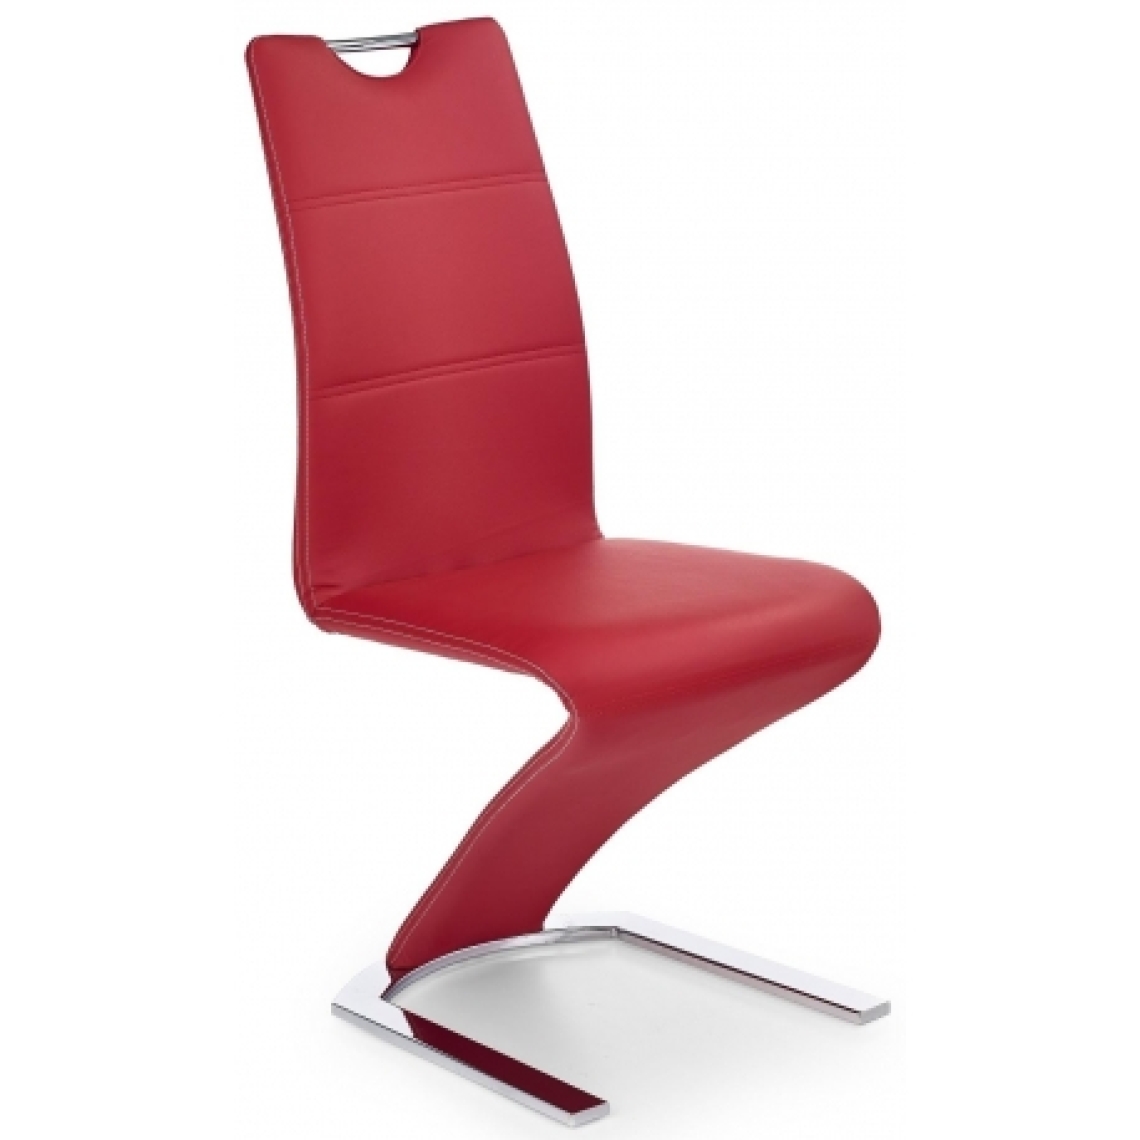 Carellia - INGRID lot de 2 chaises design - Rouge - Chaises